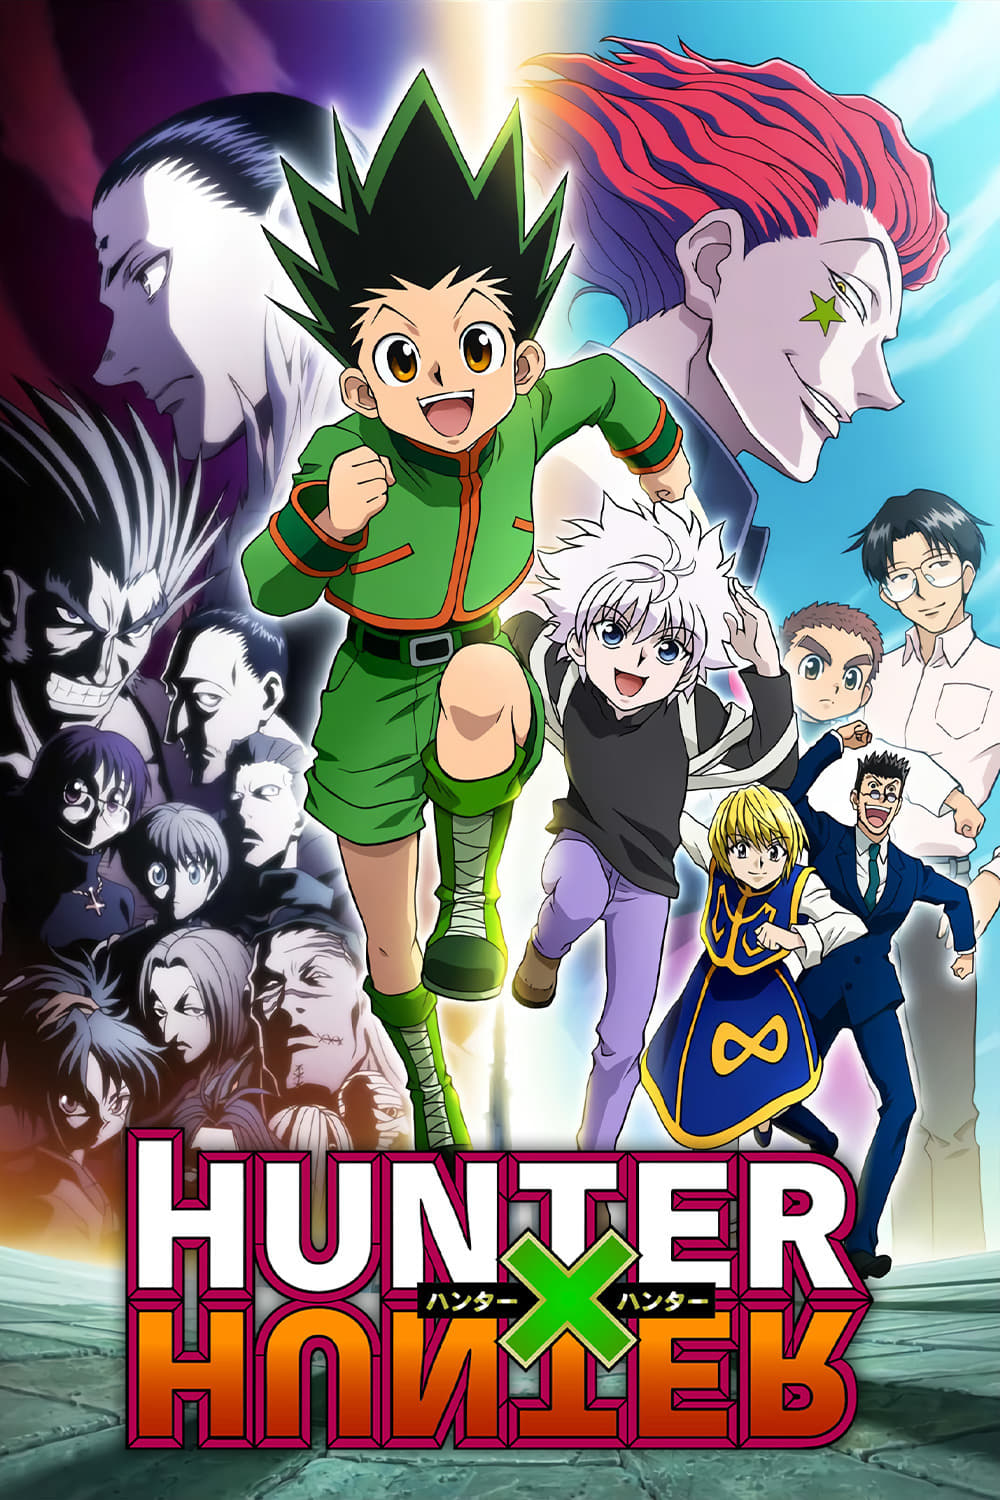 download hunter x hunter 2011 episodes